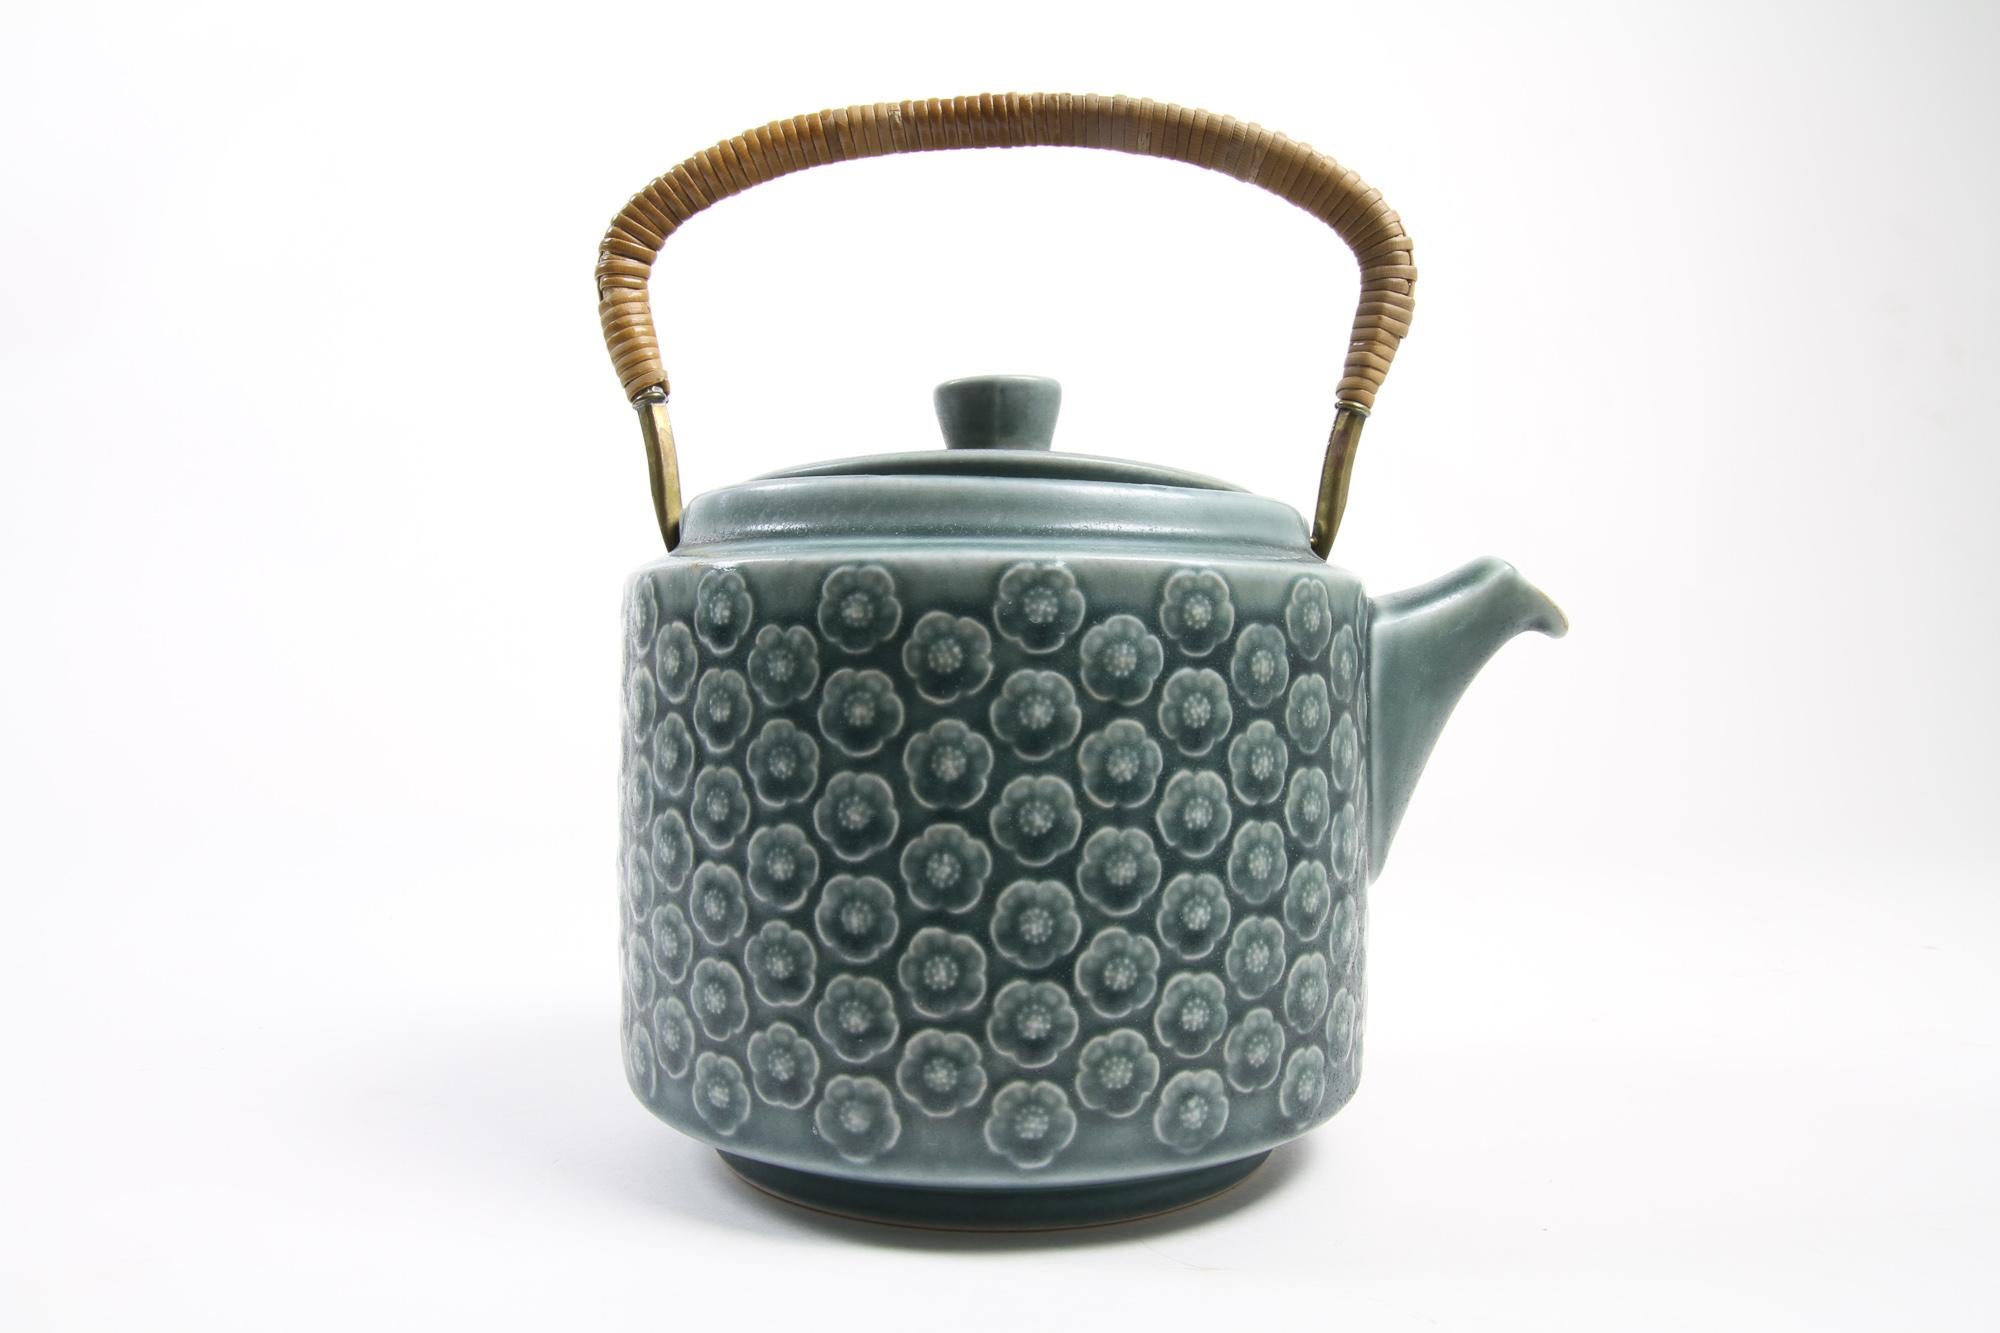 Vintage Danish Azur Steingut Teekanne von Jens H. Quistgaard für Kronjyden, 1960er Jahre.
Dieses schöne Mid-Century Modern Steingut-Set von IHQ besteht aus einer Teekanne mit Deckel und einer kleinen quadratischen Schale. Griff einer Teekanne aus